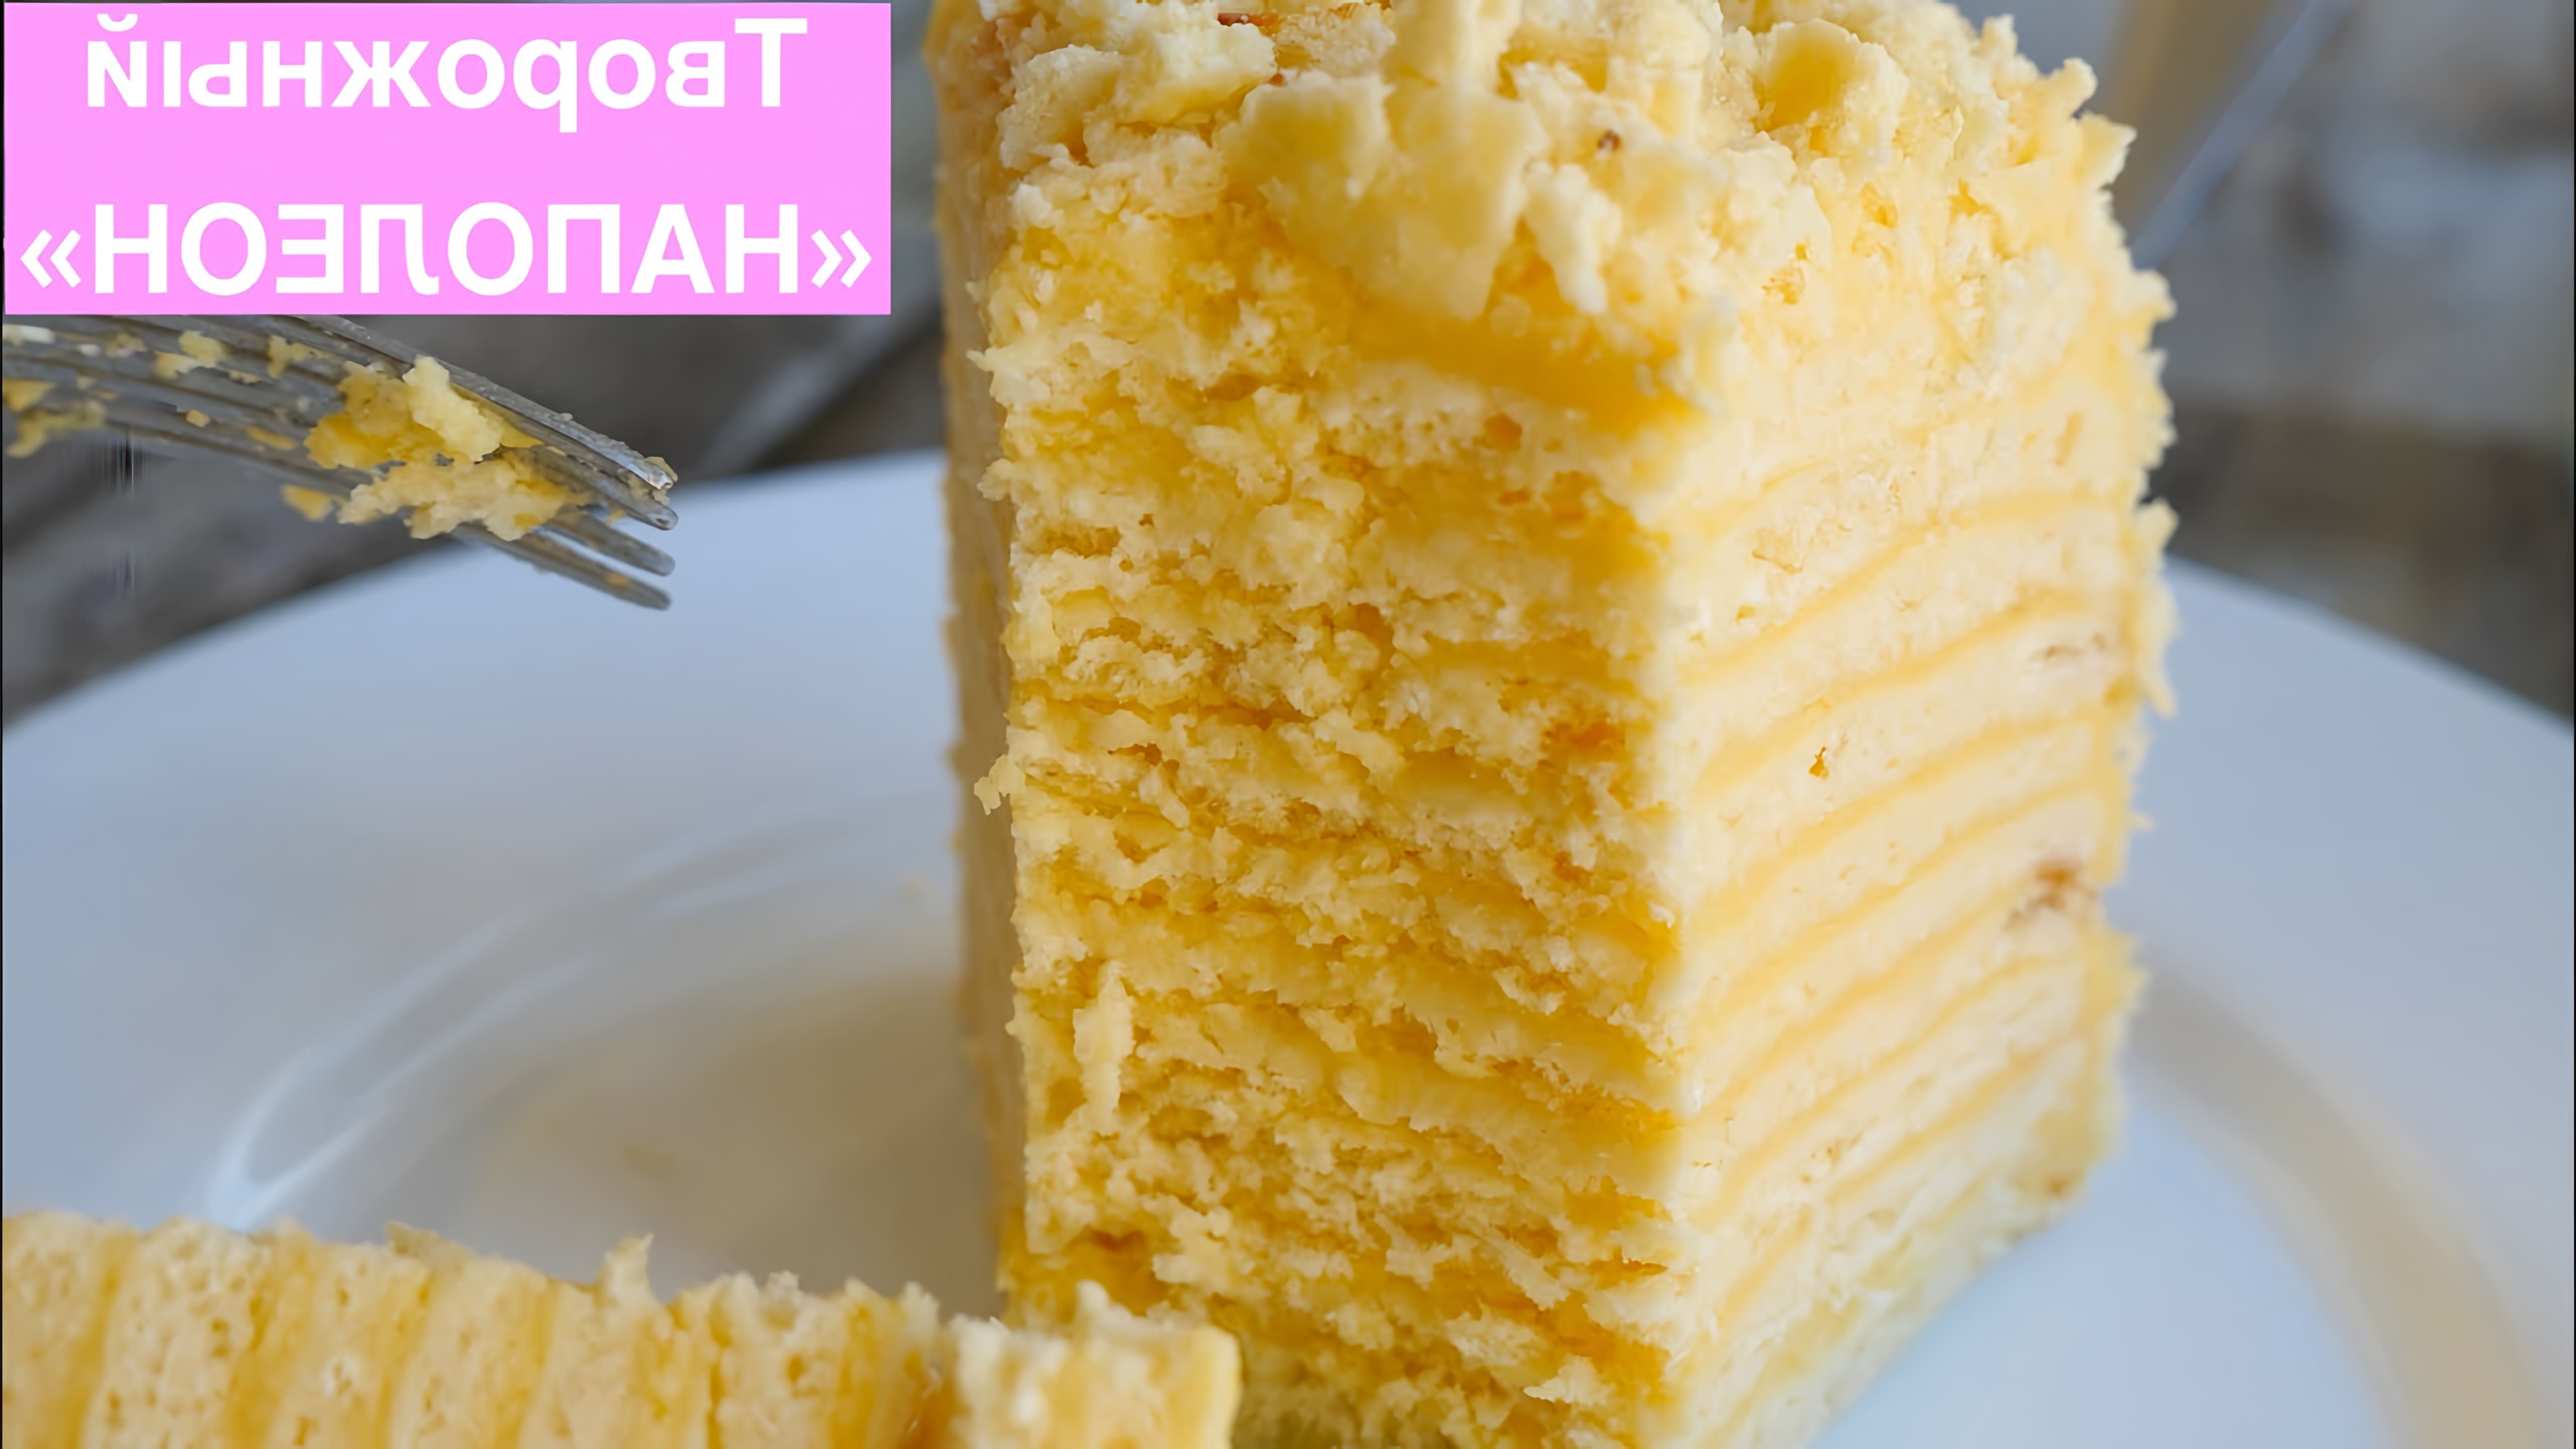 В этом видео демонстрируется рецепт приготовления торта "Наполеон" с творожным тестом